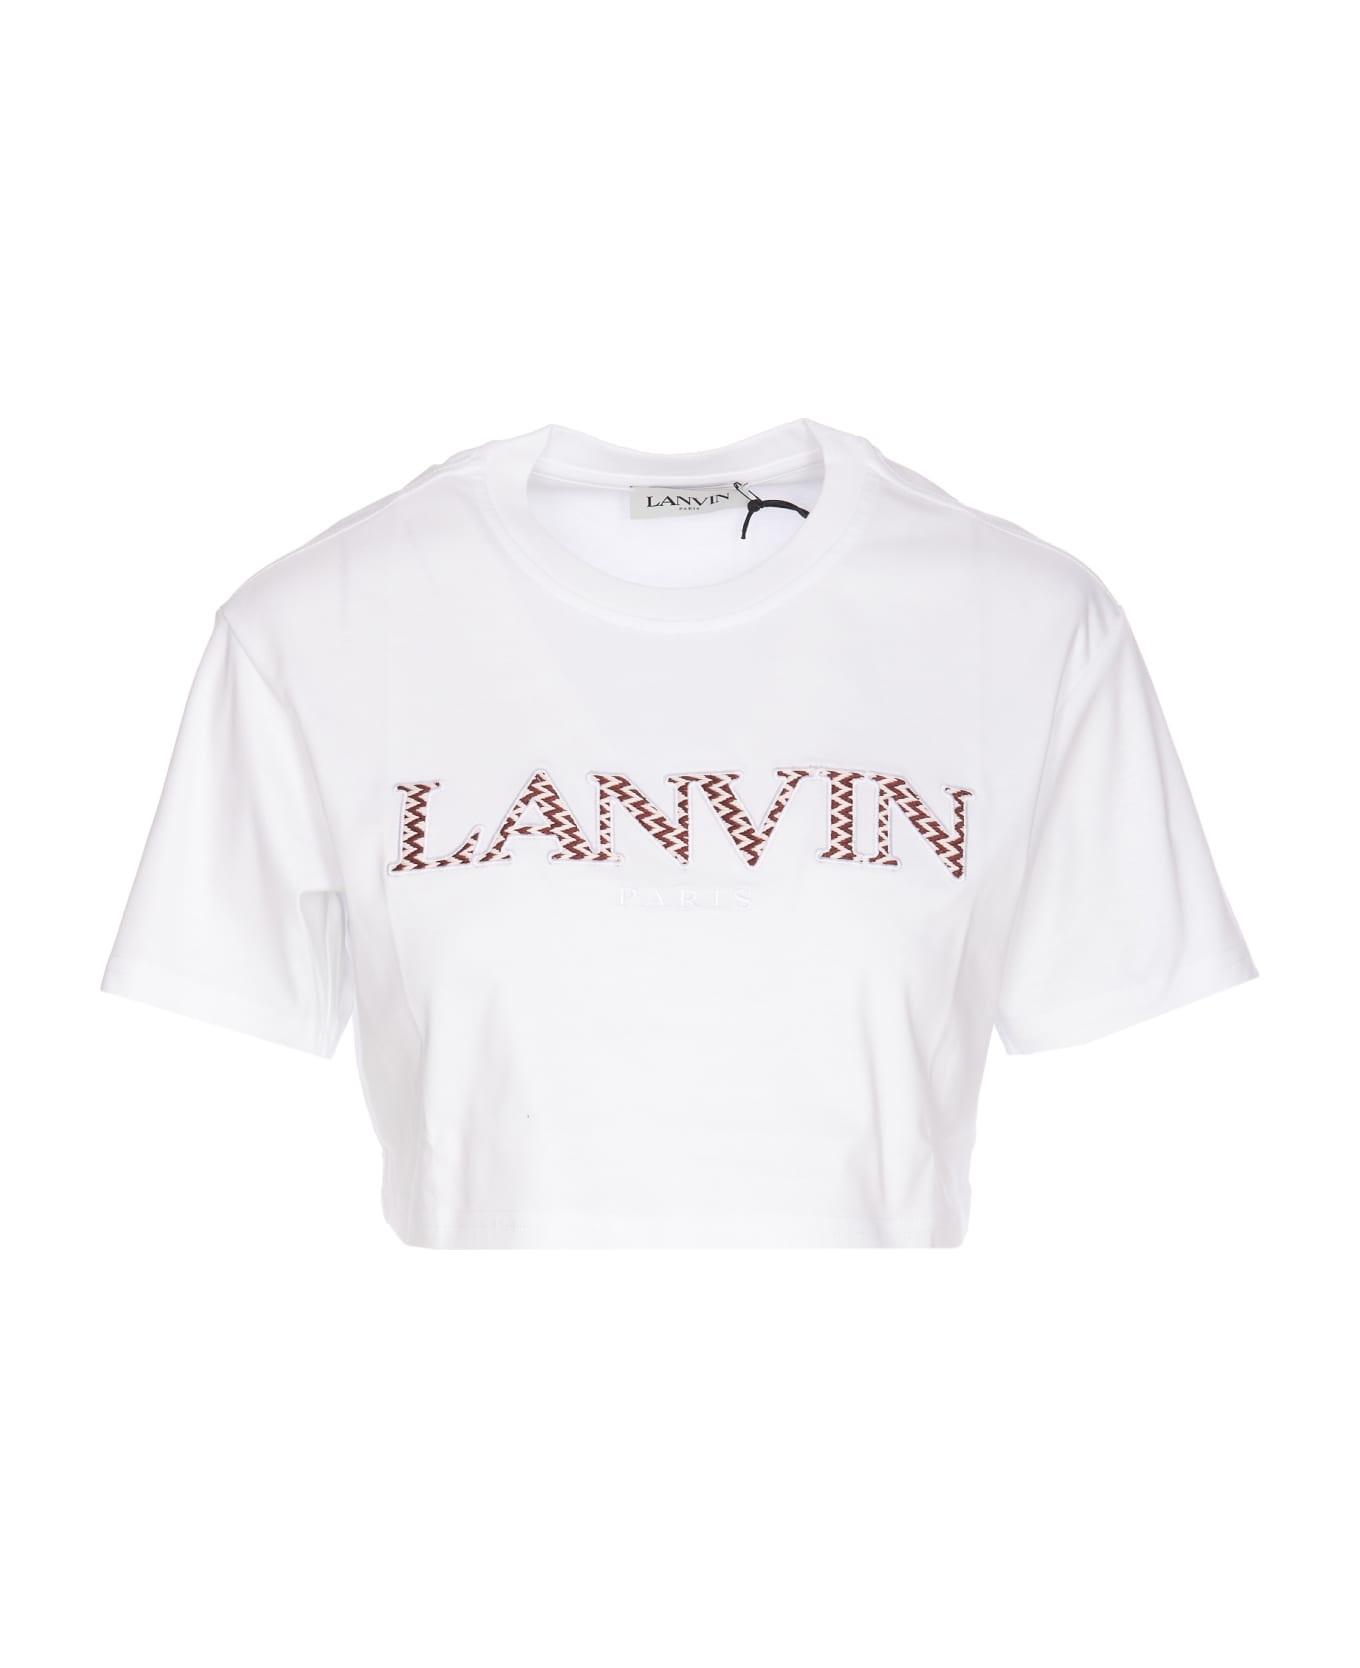 Lanvin Cropped Logo Lanvin Paris T-shirt - White